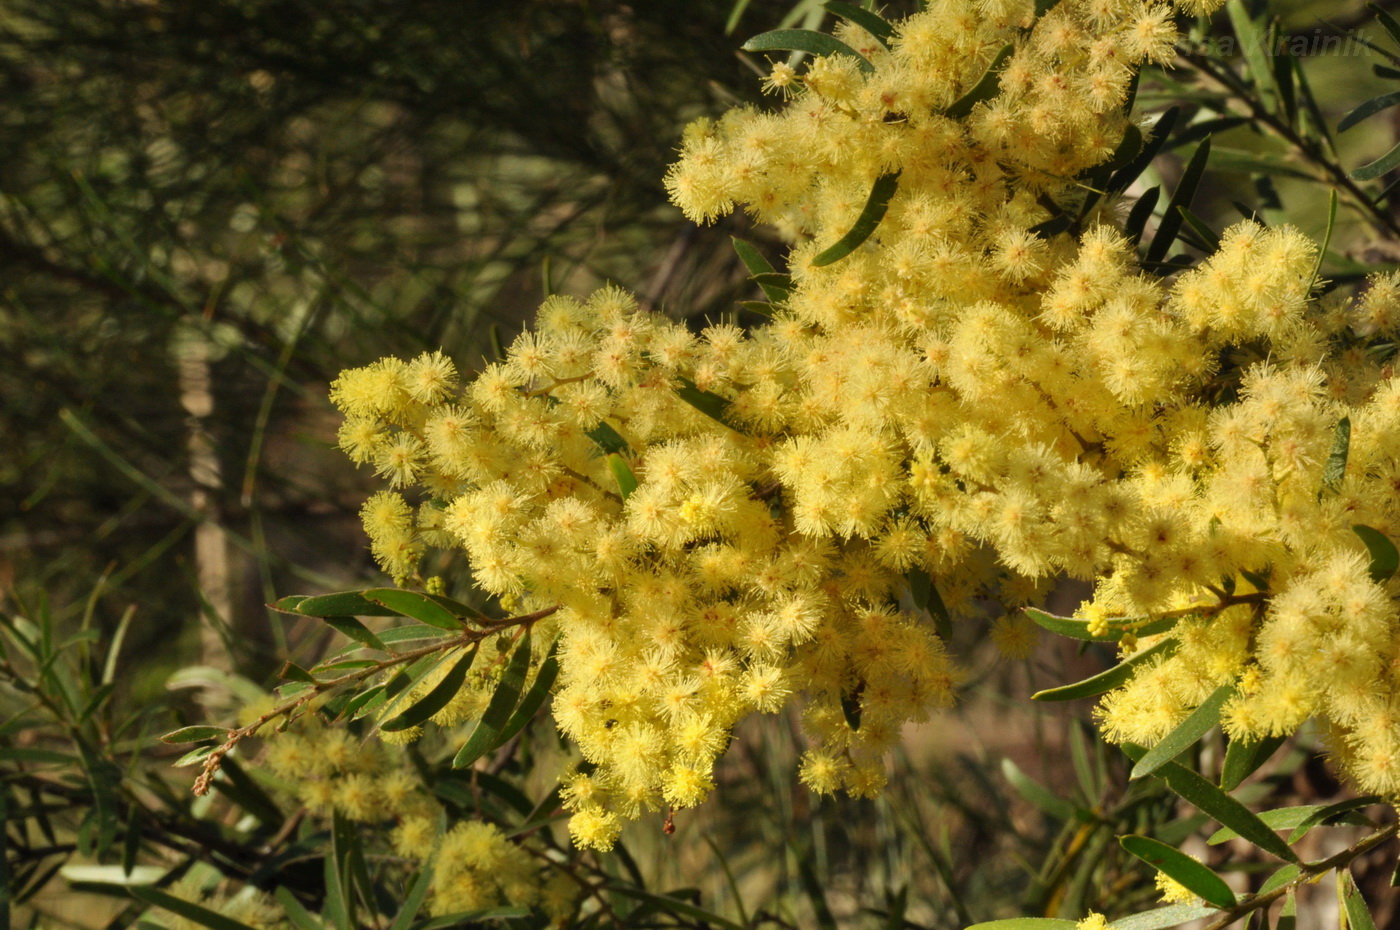 Image of Acacia saligna specimen.